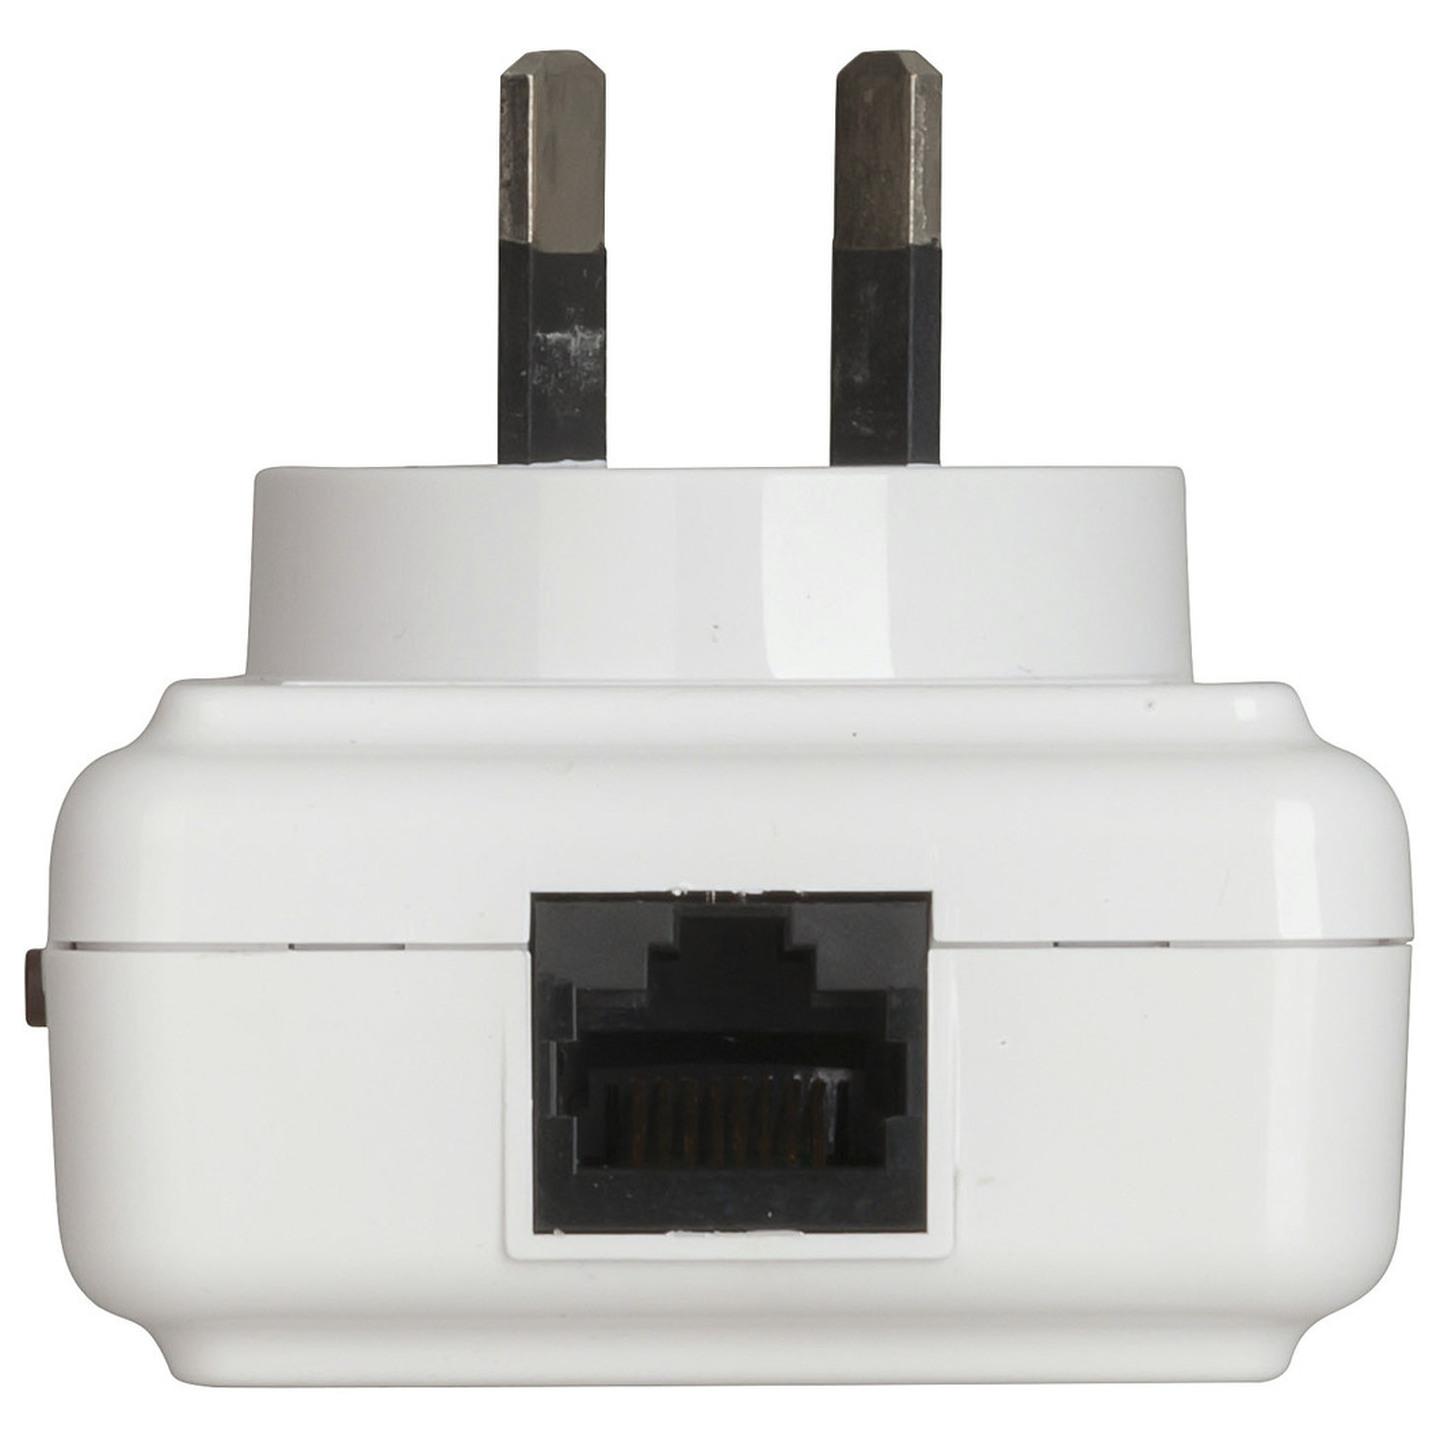 PowerLine Wi-Fi Extender with Ethernet Adaptor Kit AV500